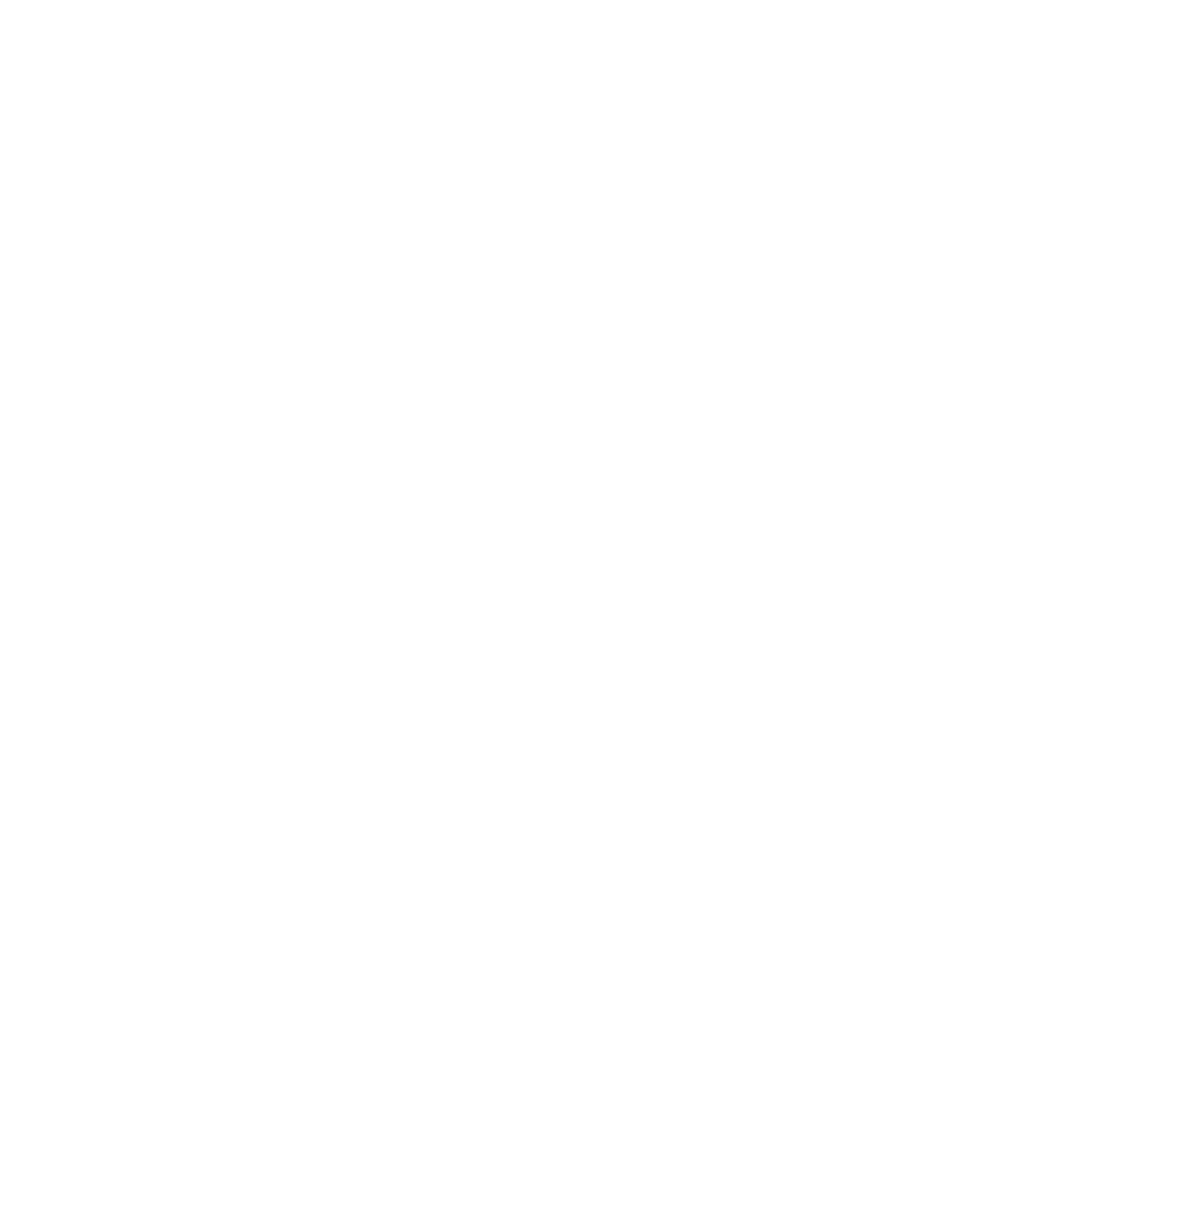 Flyin R Electric